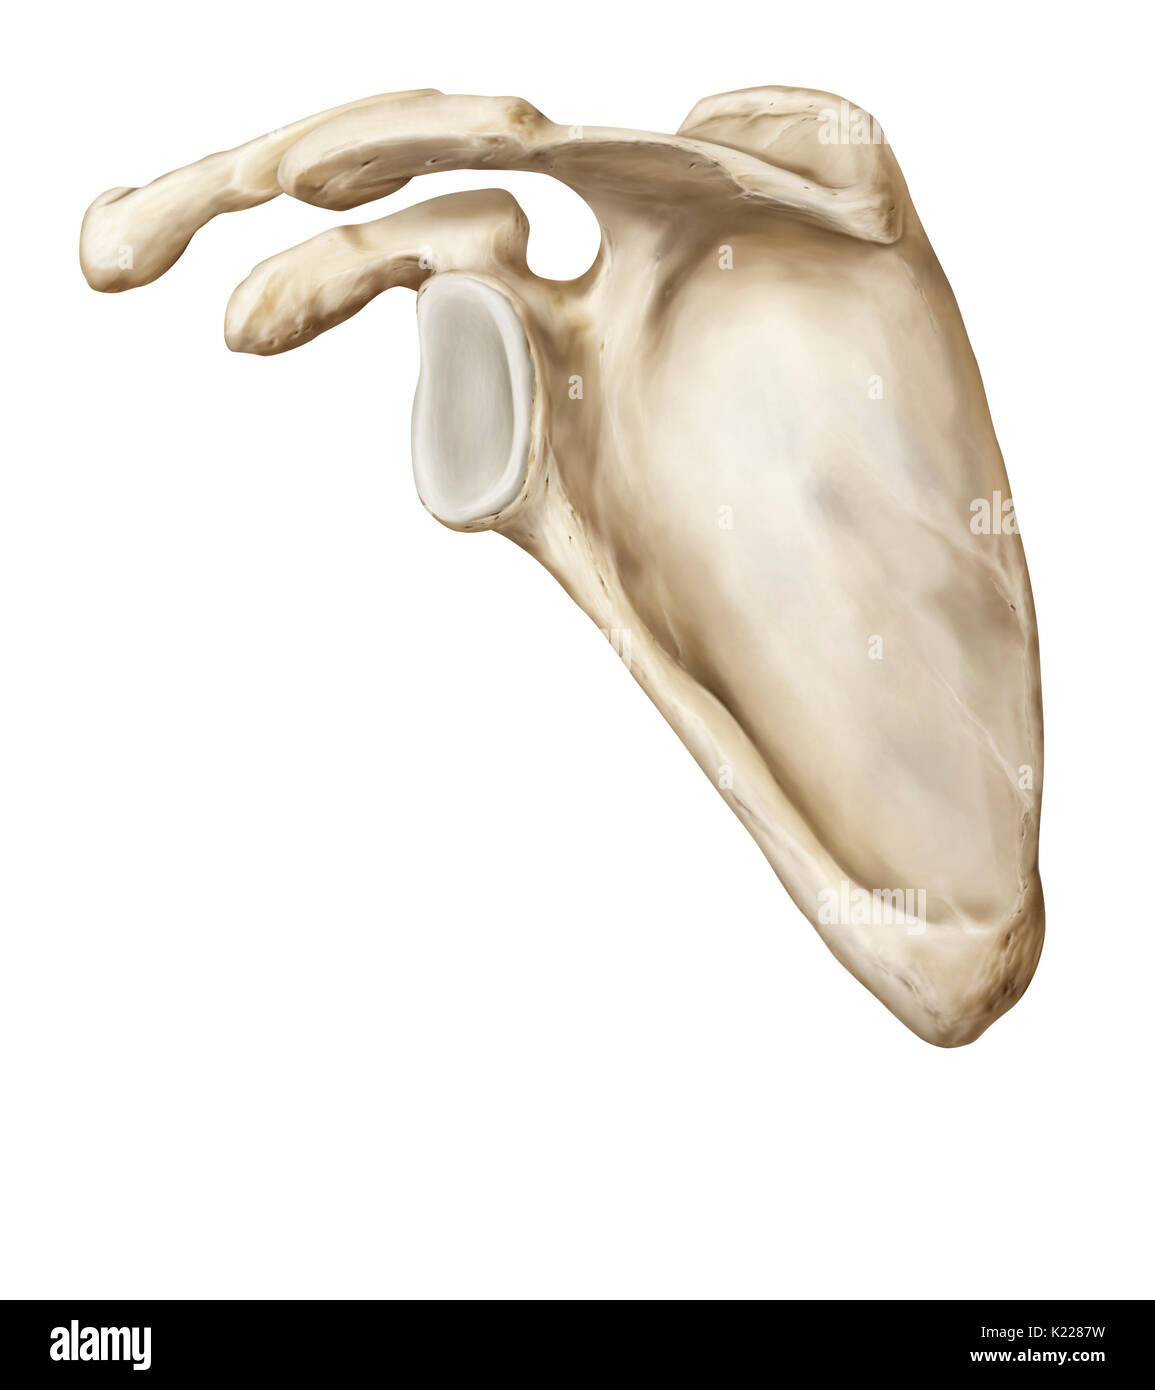 Gepaart mit Knochen, dreieckige Form artikulieren, mit dem Schlüsselbein und humerus; es schützt den Thorax und dient als Einfügepunkt für mehrere Rückenmuskulatur. Stockfoto